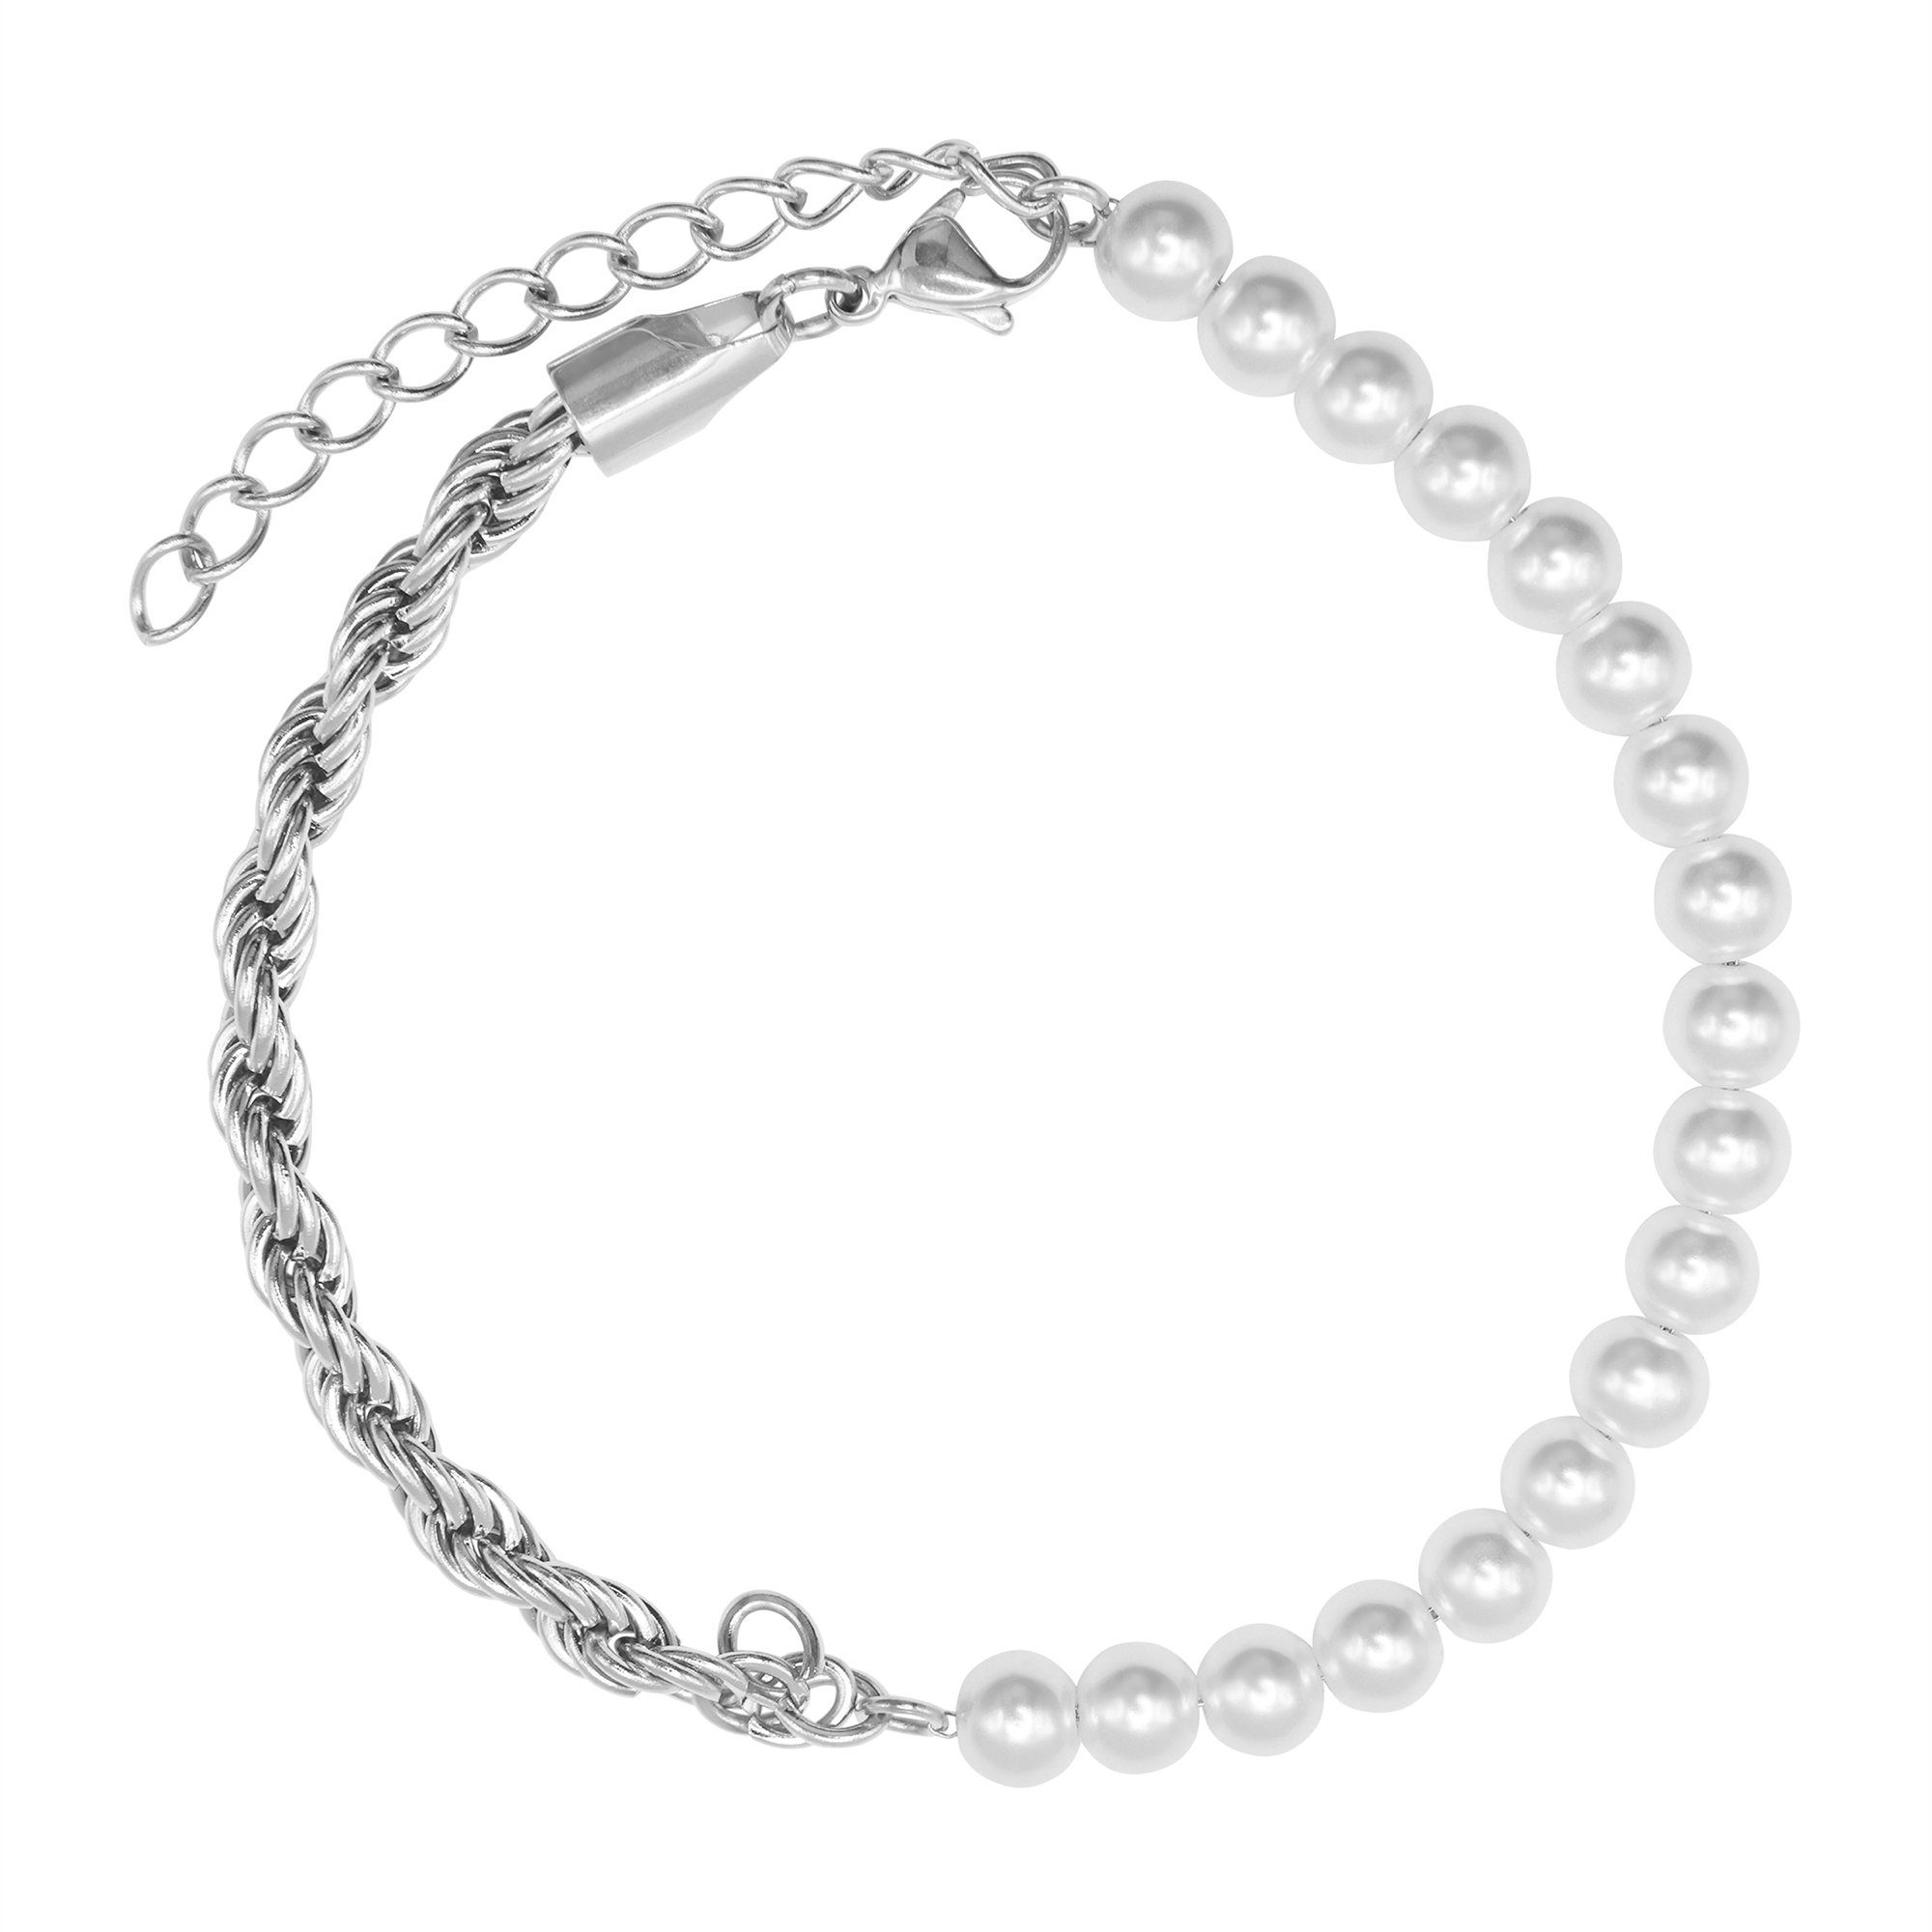 poliert Material und Heideman Edelstahl Mix Jill - inkl. Geschenkverpackung), Perle Armband (Armband, silberfarben